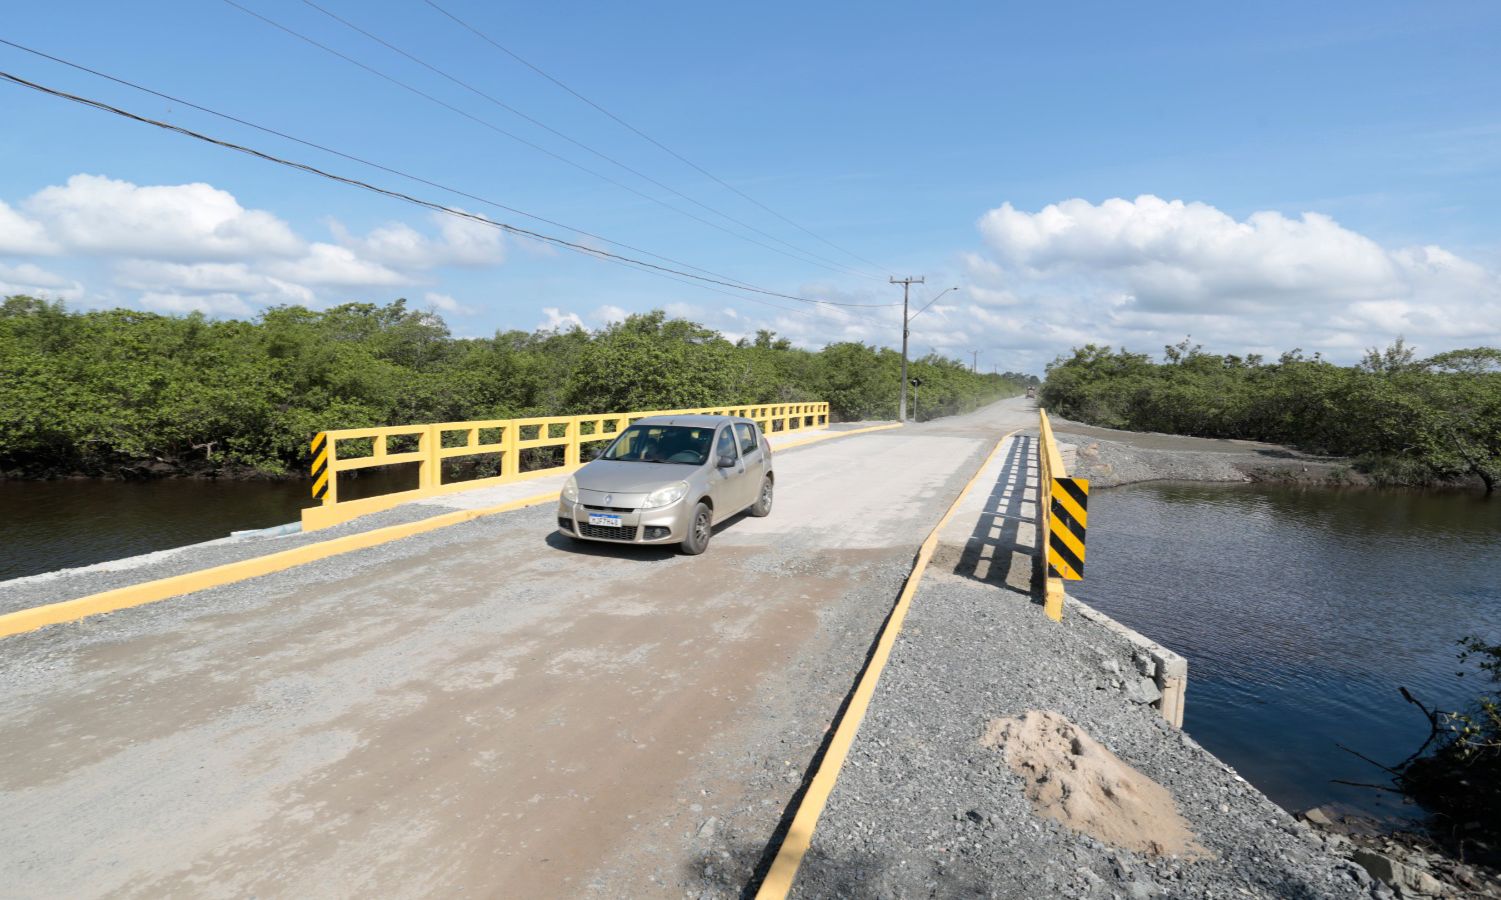 Joinville entrega nova ponte do Morro do Amaral